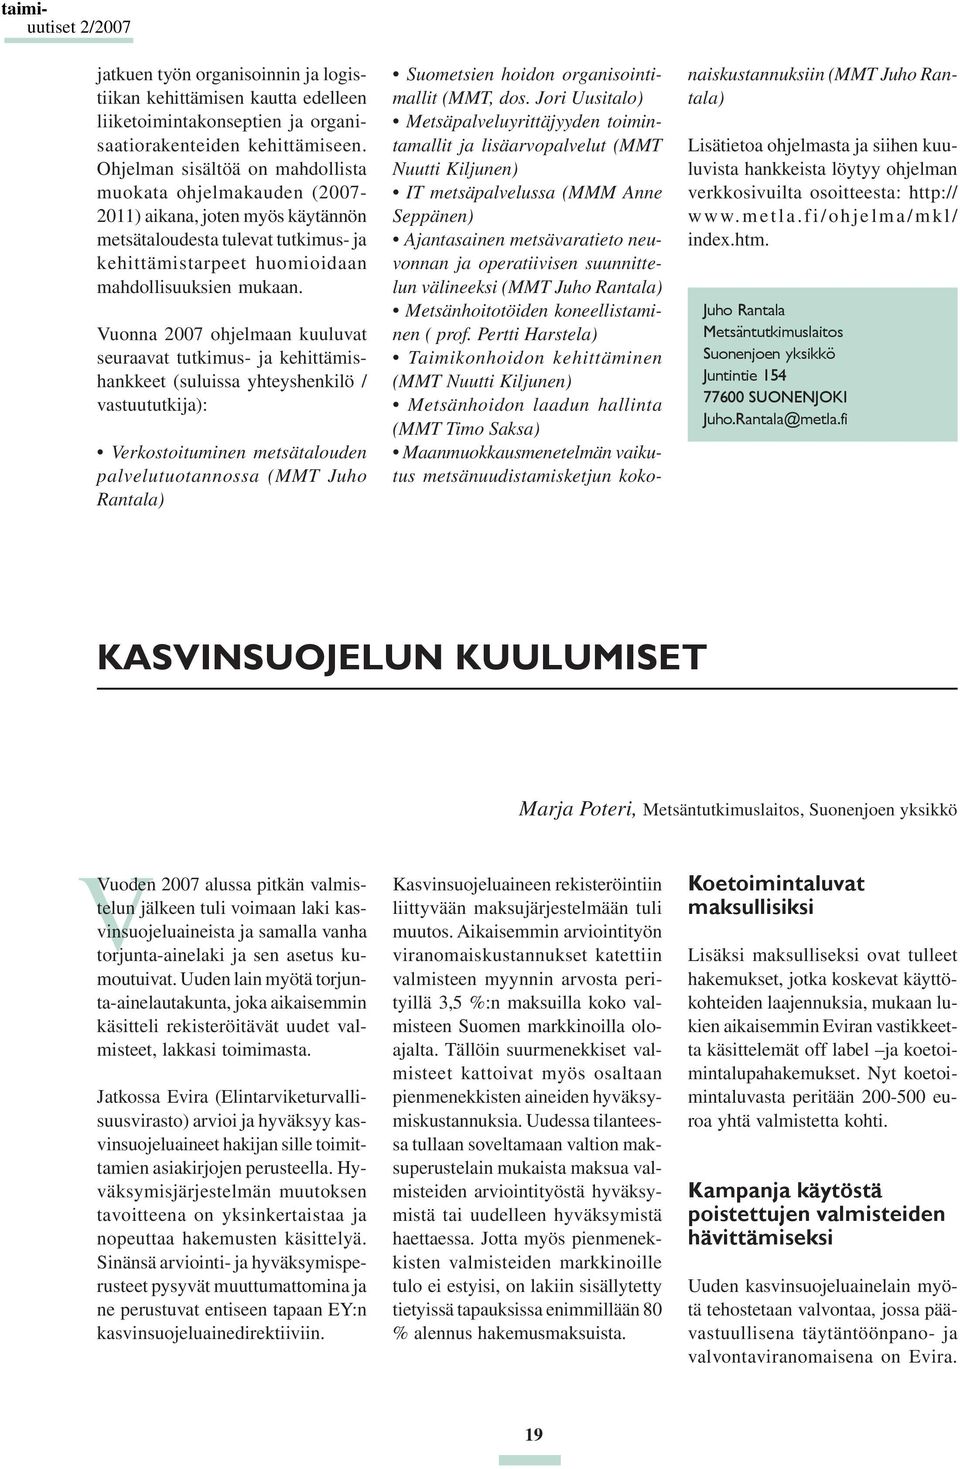 Vuonna 2007 ohjelmaan kuuluvat seuraavat tutkimus- ja kehittämishankkeet (suluissa yhteyshenkilö / vastuututkija): Verkostoituminen metsätalouden palvelutuotannossa (MMT Juho Rantala) Suometsien